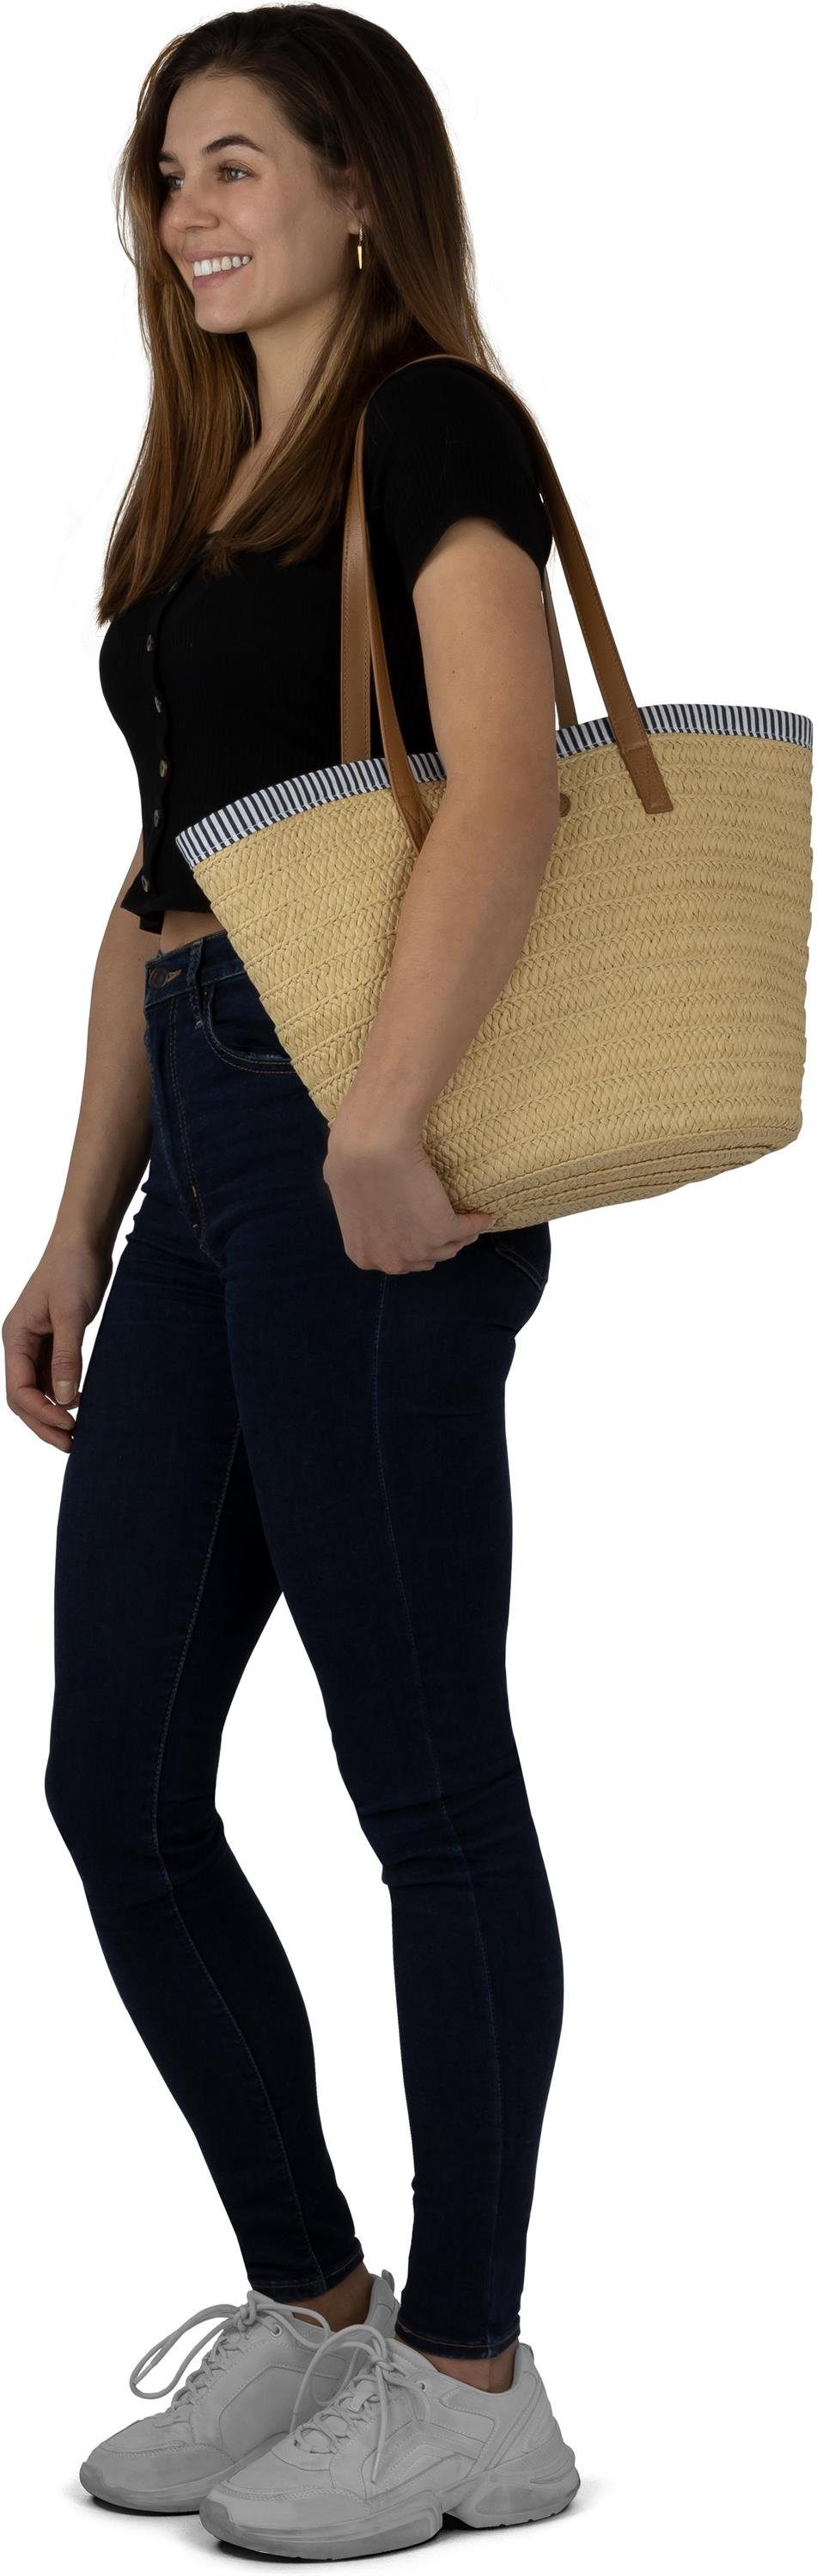 Strandtasche Stroh Mindanao, Liter Maritim-Look Damen 10 Janice Strandtasche aus im Sommertasche für